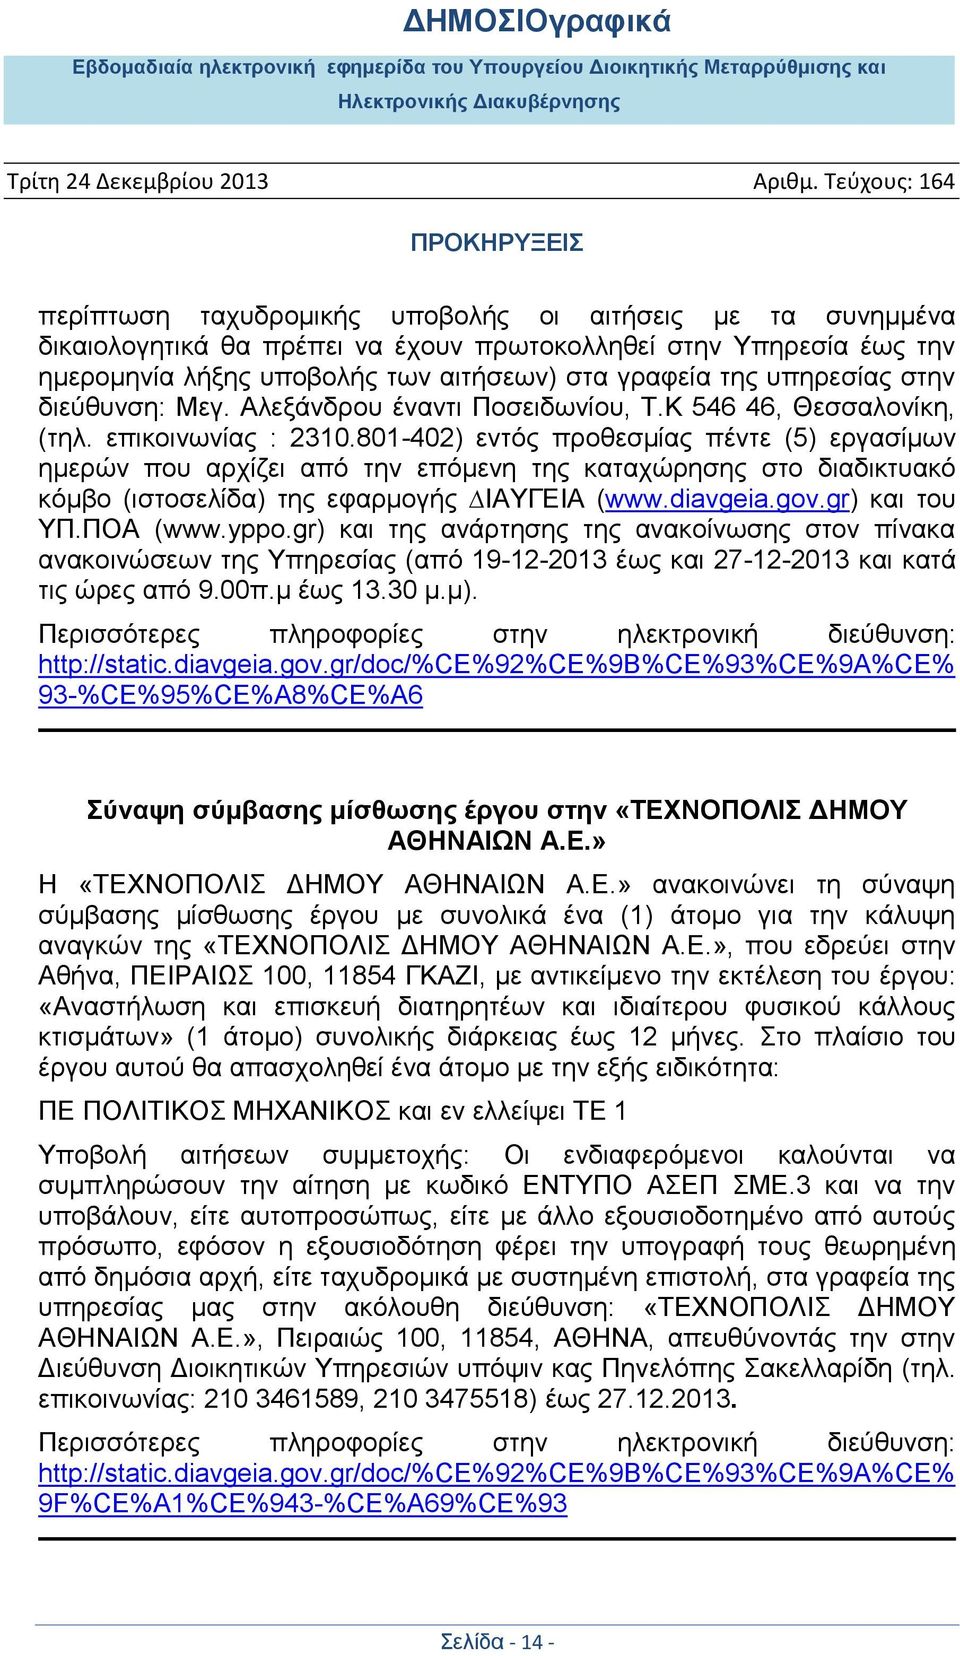 801-402) εντός προθεσμίας πέντε (5) εργασίμων ηµερών που αρχίζει από την επόμενη της καταχώρησης στο διαδικτυακό κόµβο (ιστοσελίδα) της εφαρμογής ΙΑΥΓΕΙΑ (www.diavgeia.gov.gr) και του ΥΠ.ΠΟA (www.